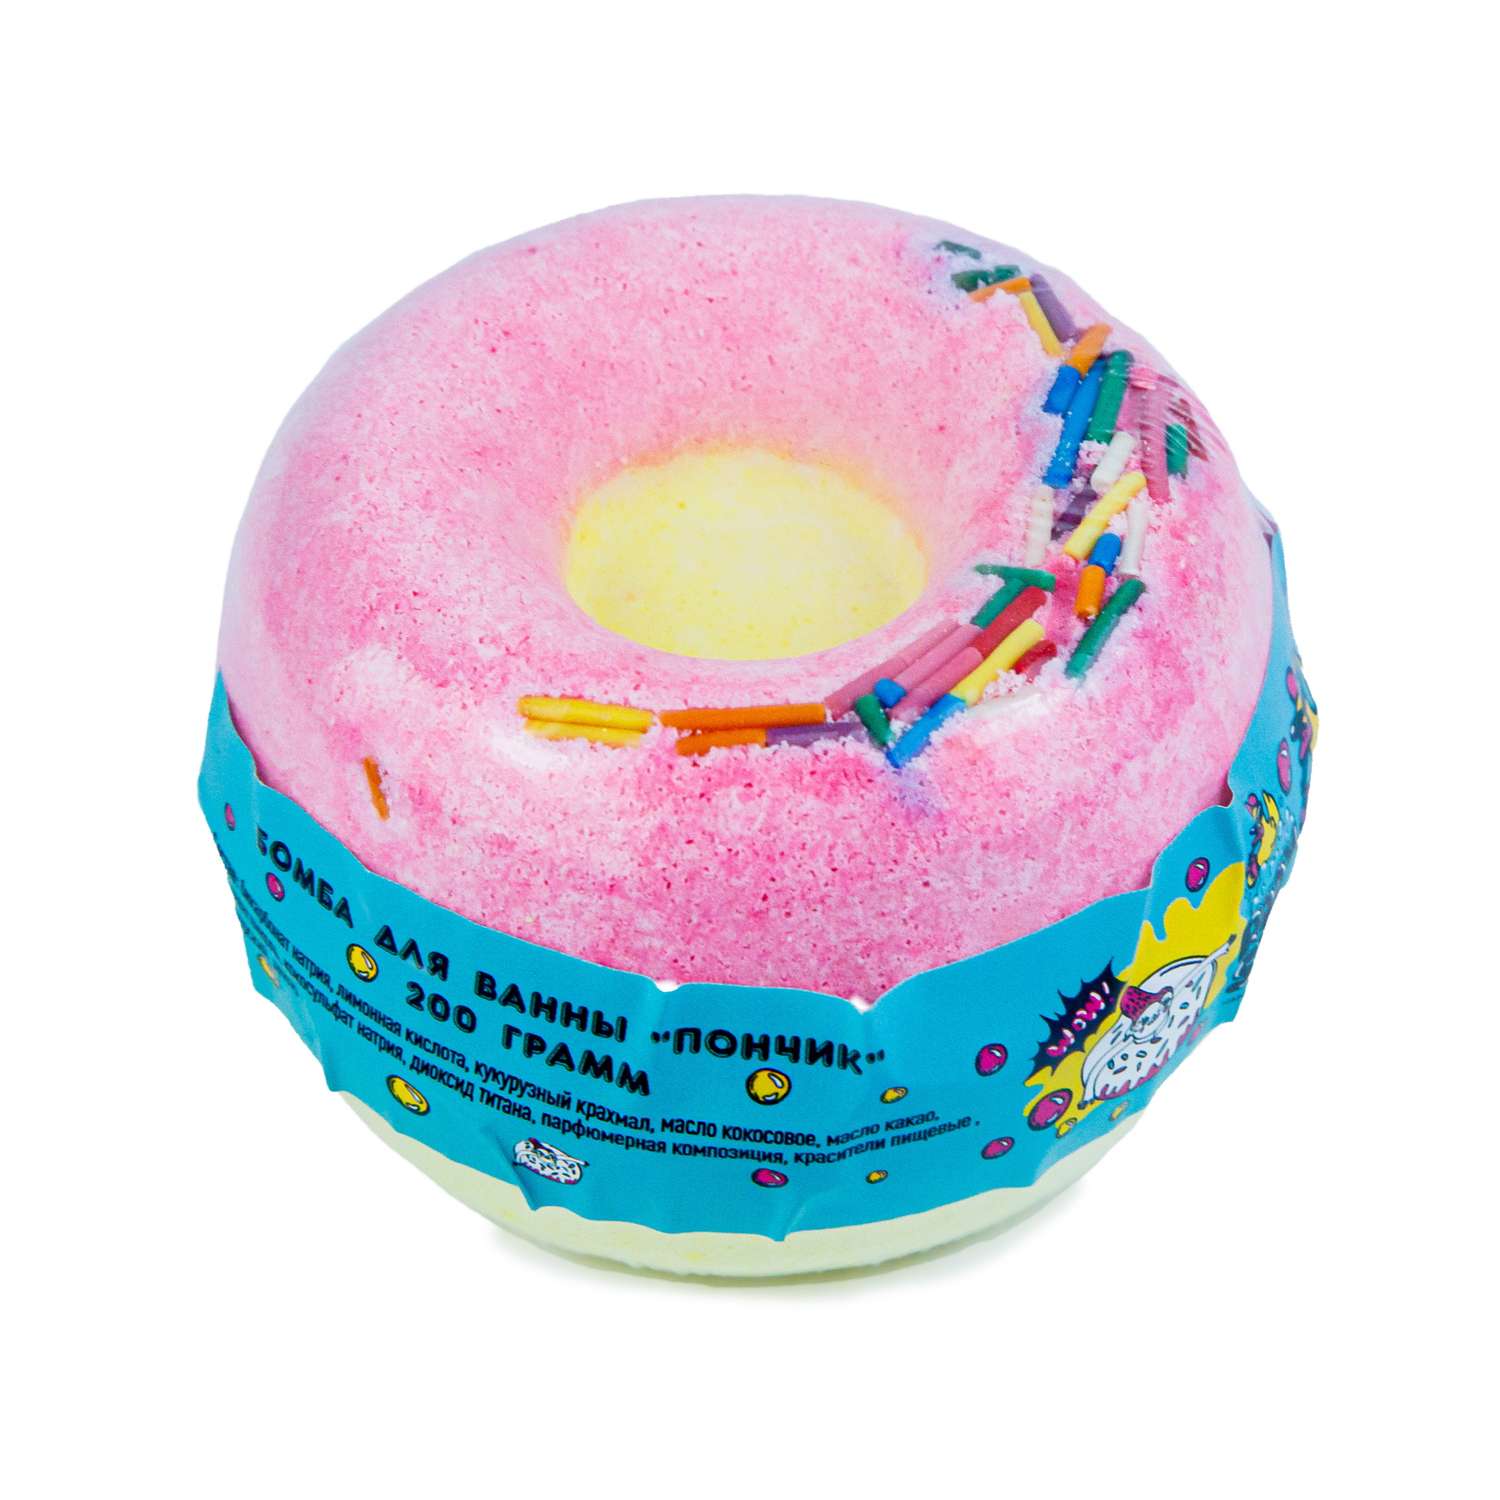 Бомбочка для ванны BOOM SHOP cosmetics Пончик 200г - фото 1